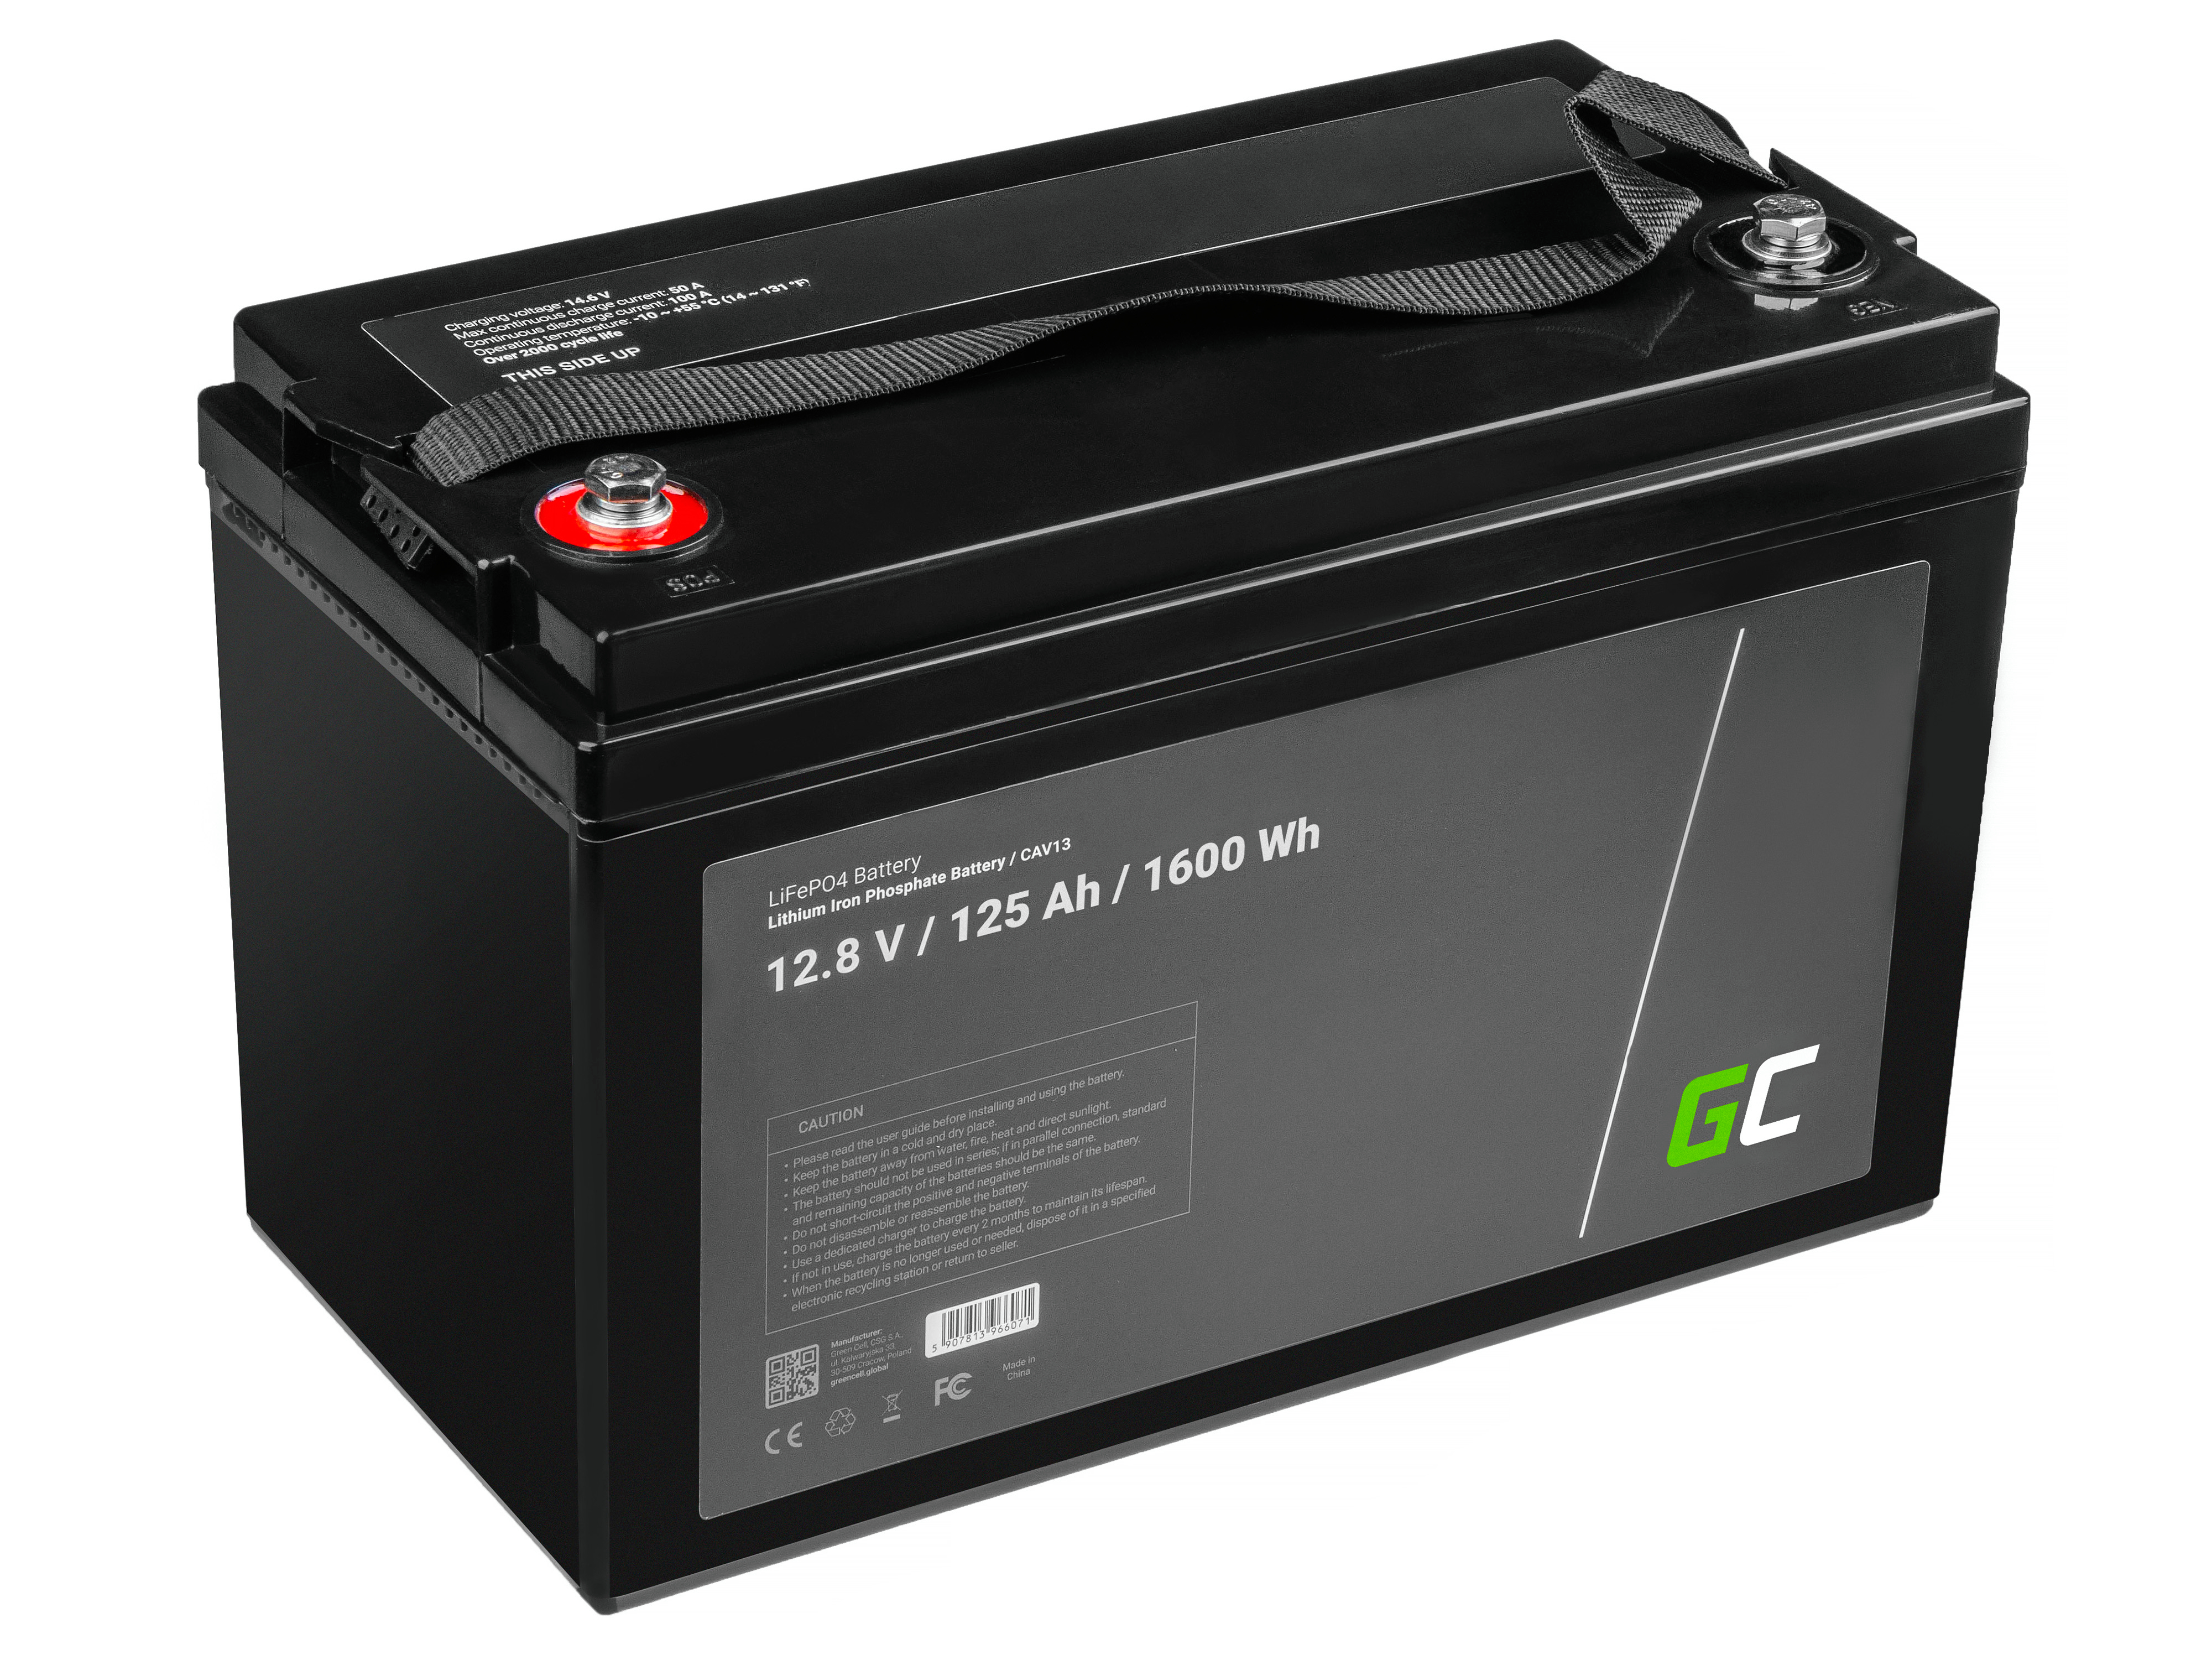 Baterie Green Cell Lithium-železo-fosfátová LiFePO4 baterie 12V, 12,8V 125Ah pro solární panely, obytné automobily a lodě